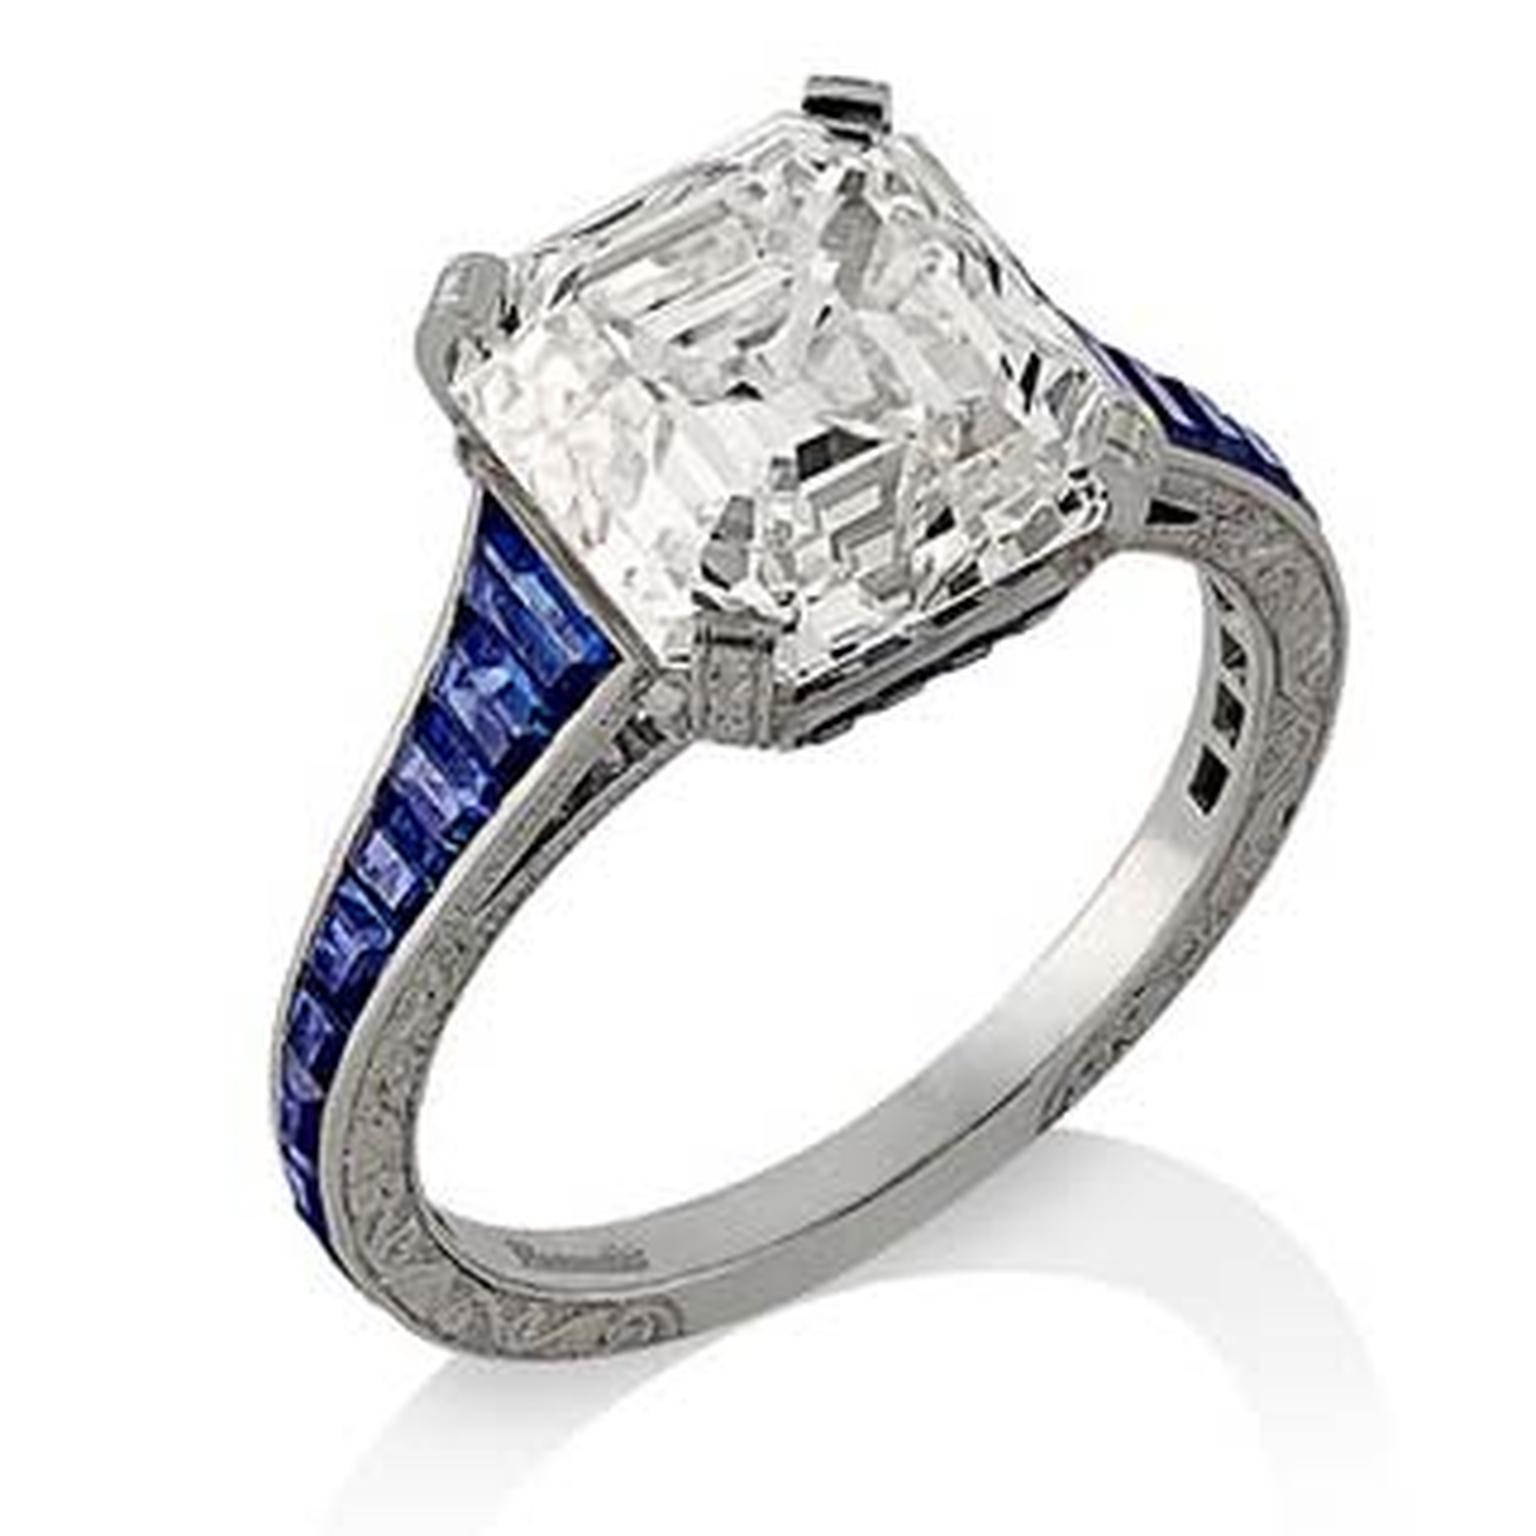 Hancocks Asscher cut diamond engagement ring